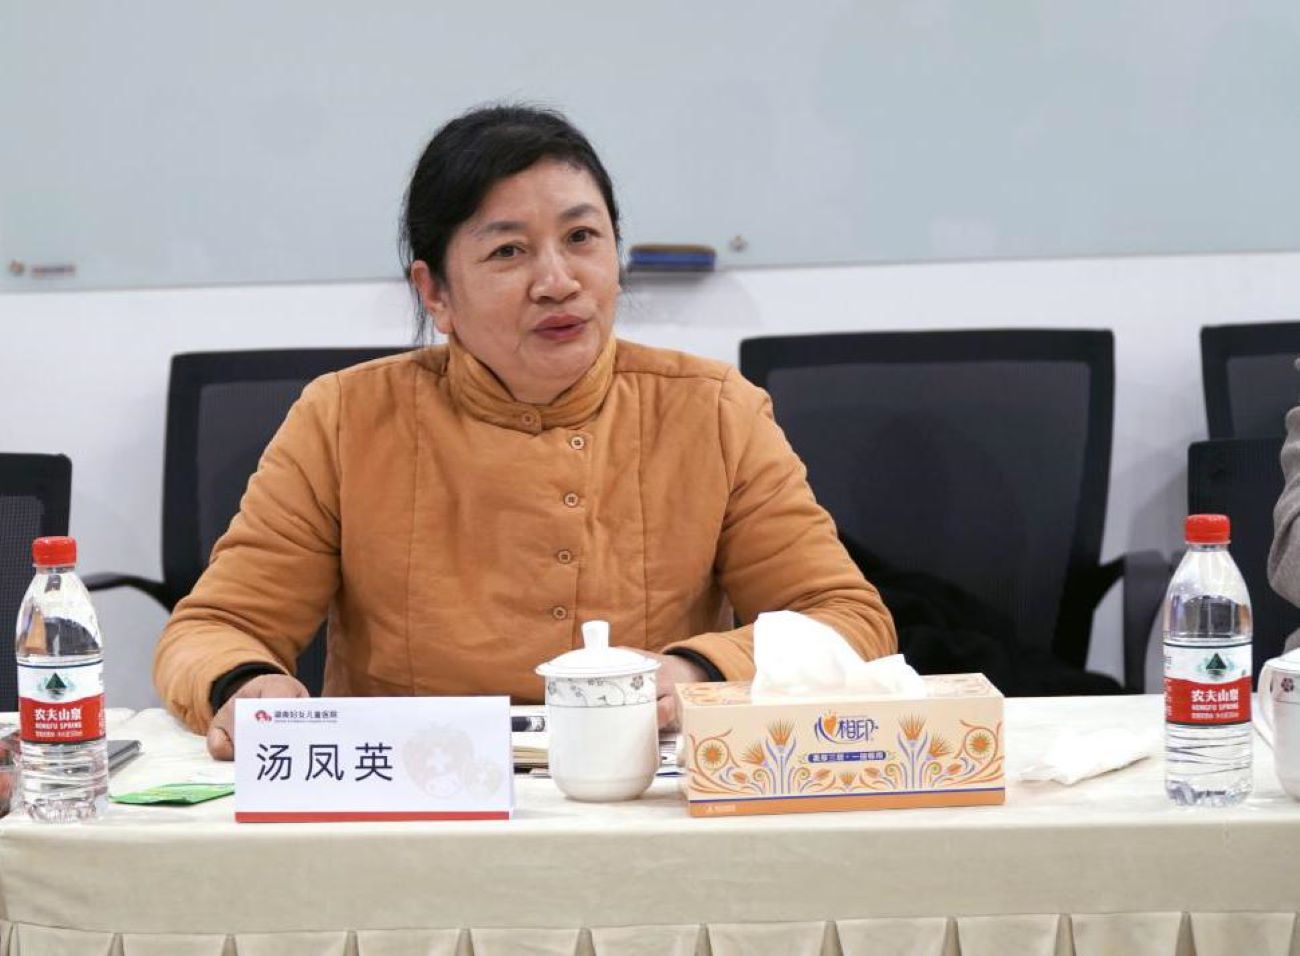 湖南省妇女儿童发展基金会汤凤英秘书长发言。单位供图